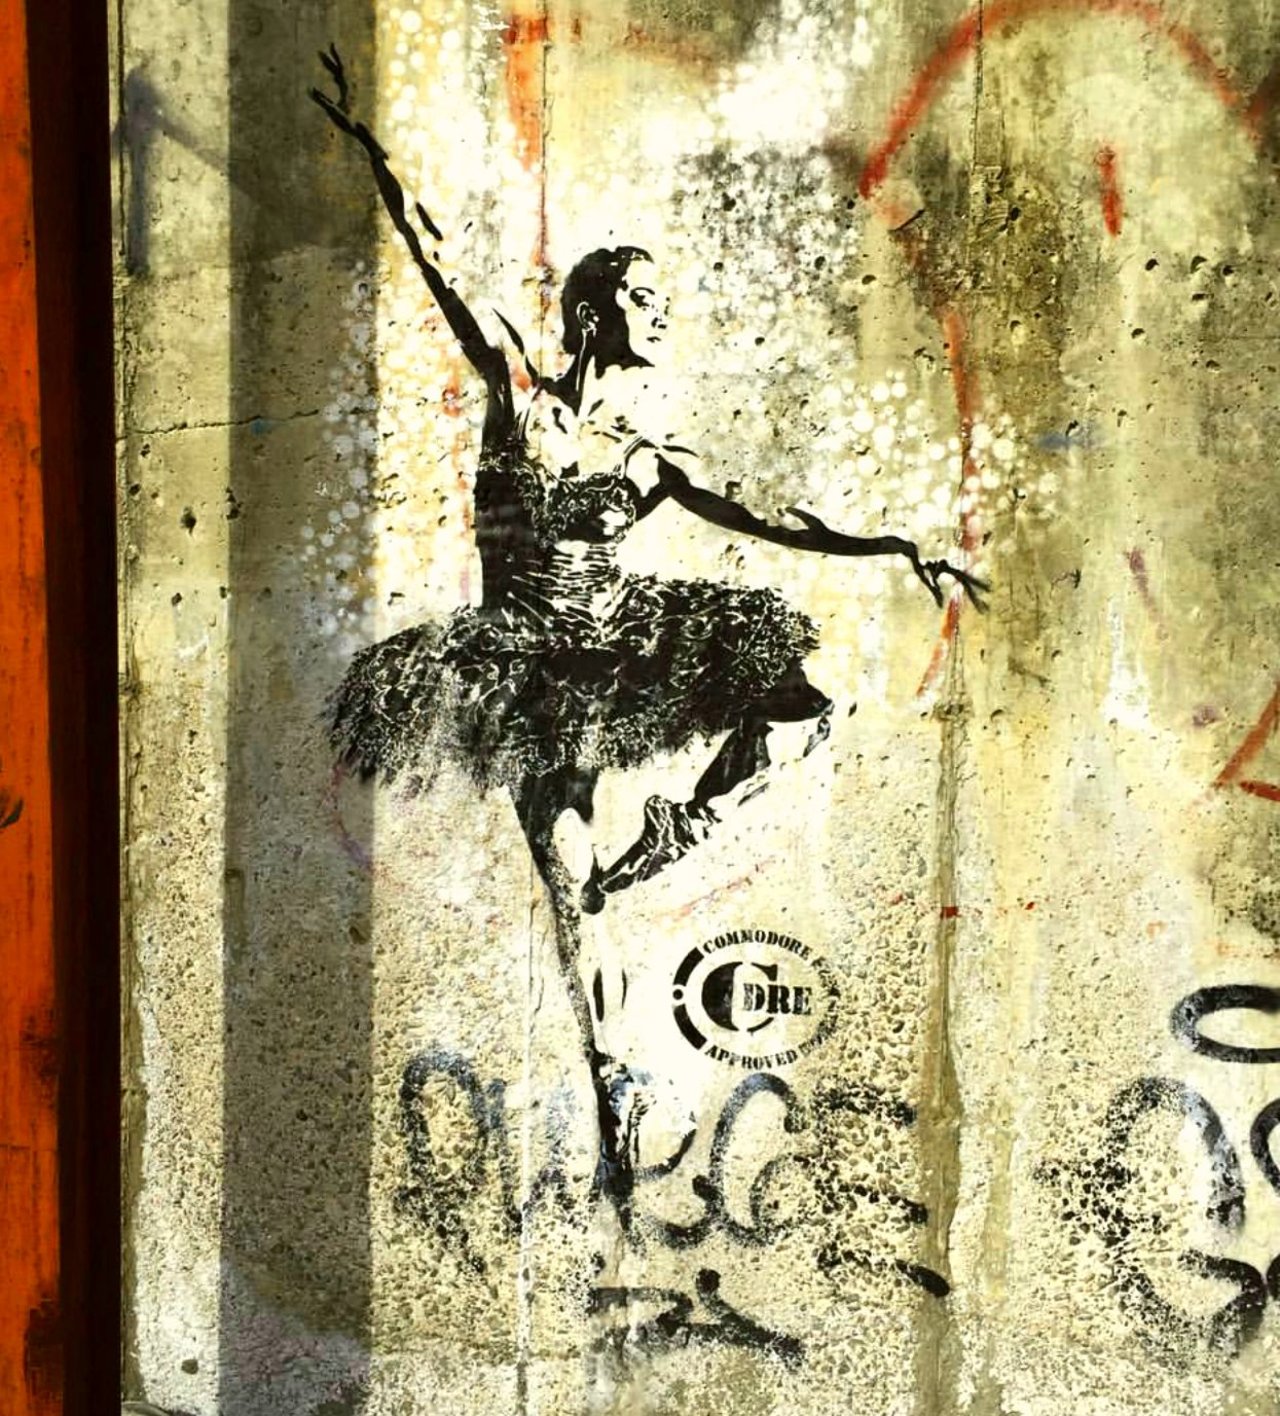 Very cool ballerina in #bushwick #Brooklyn by @cdre_art #streetart #art #contemporaryart #stencil https://t.co/6ASmY71Shg